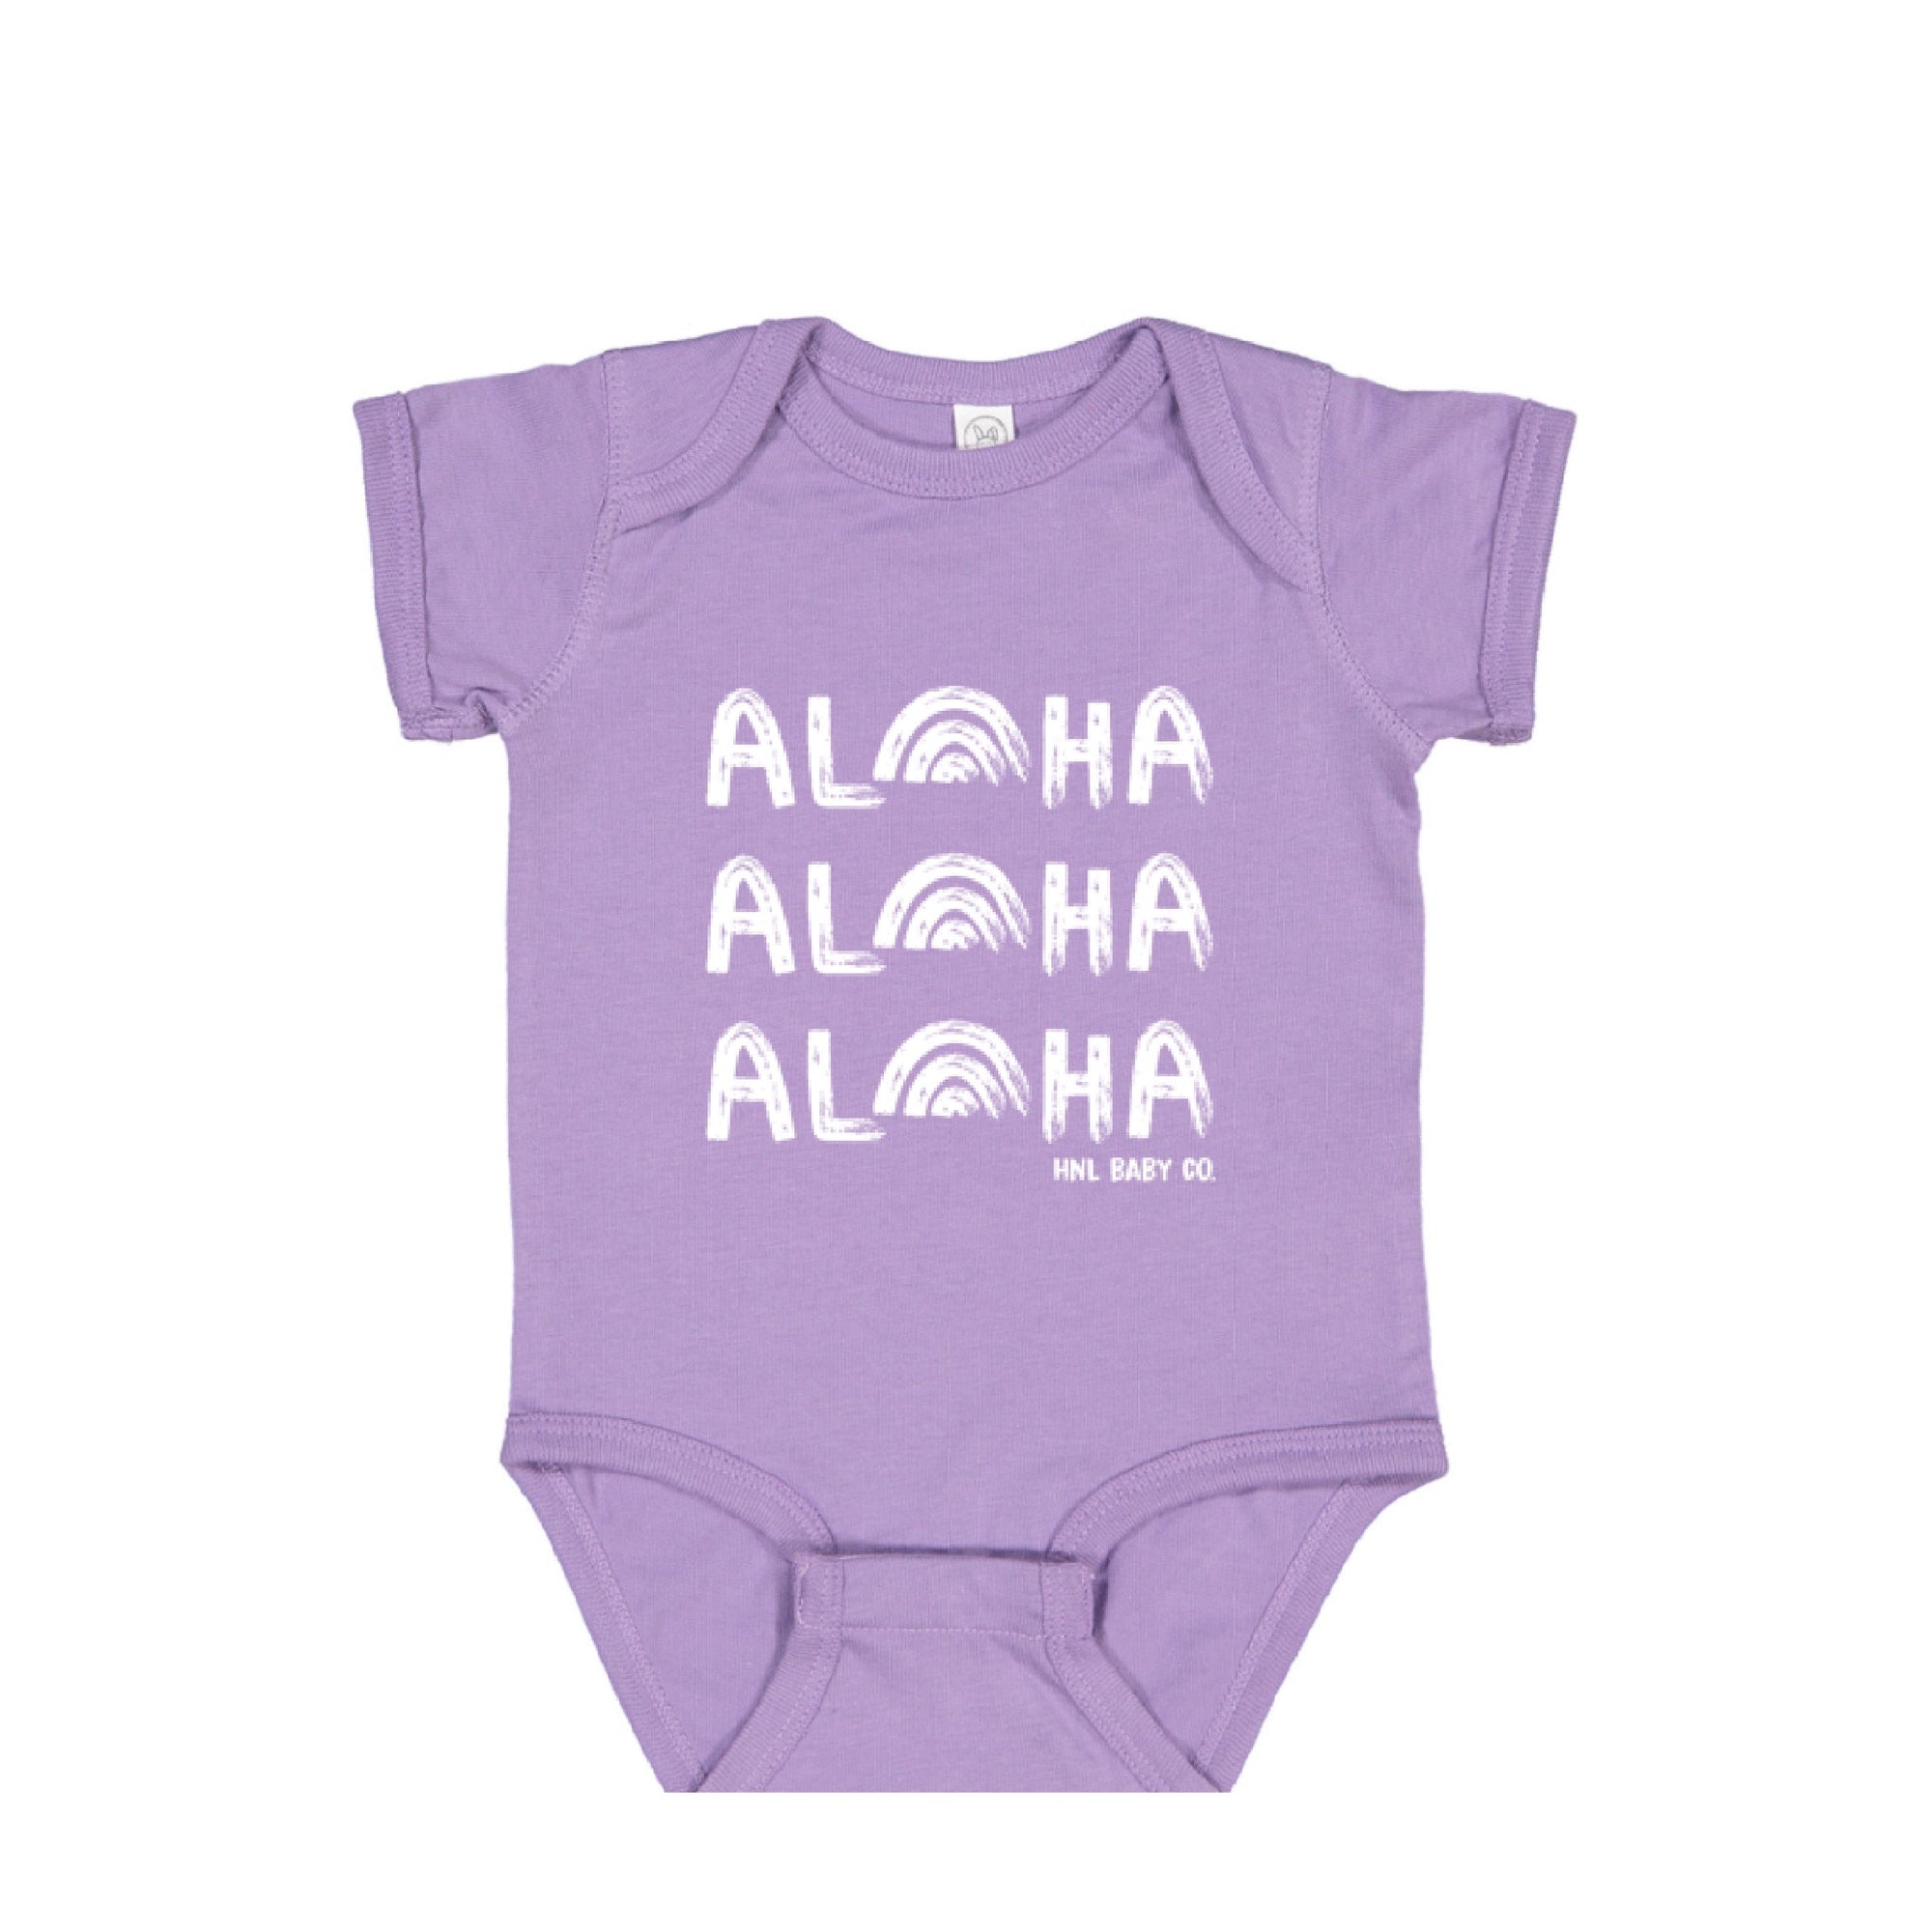 Pop-Up Mākeke - Honolulu Baby Co. - Aloha, Aloha, Aloha Baby Onesie - Lavender